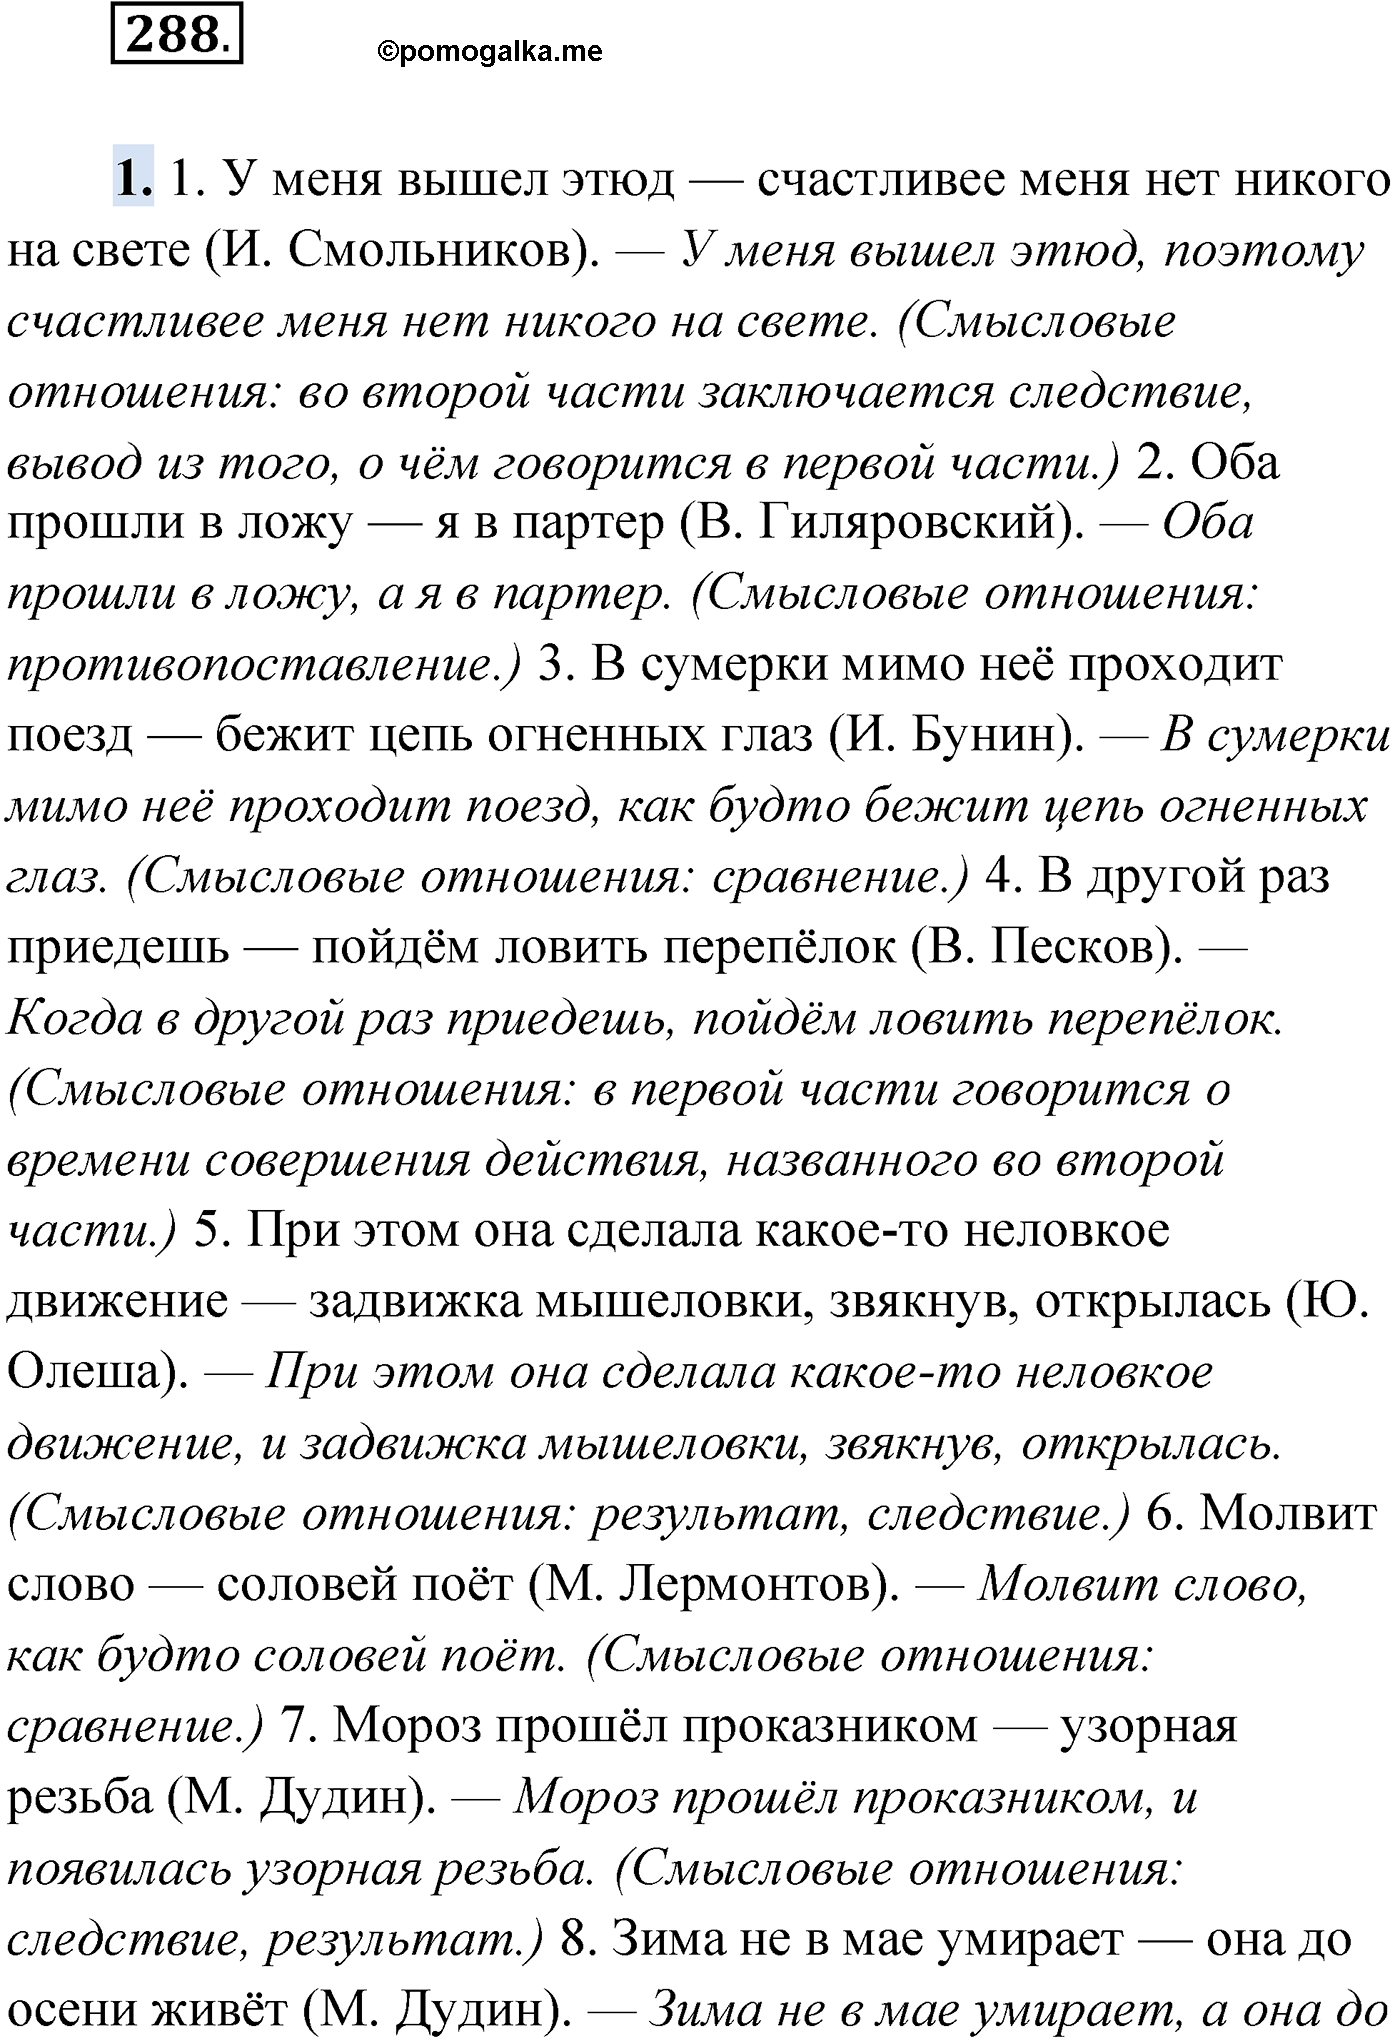 упражнение №288 русский язык 9 класс Мурина 2019 год